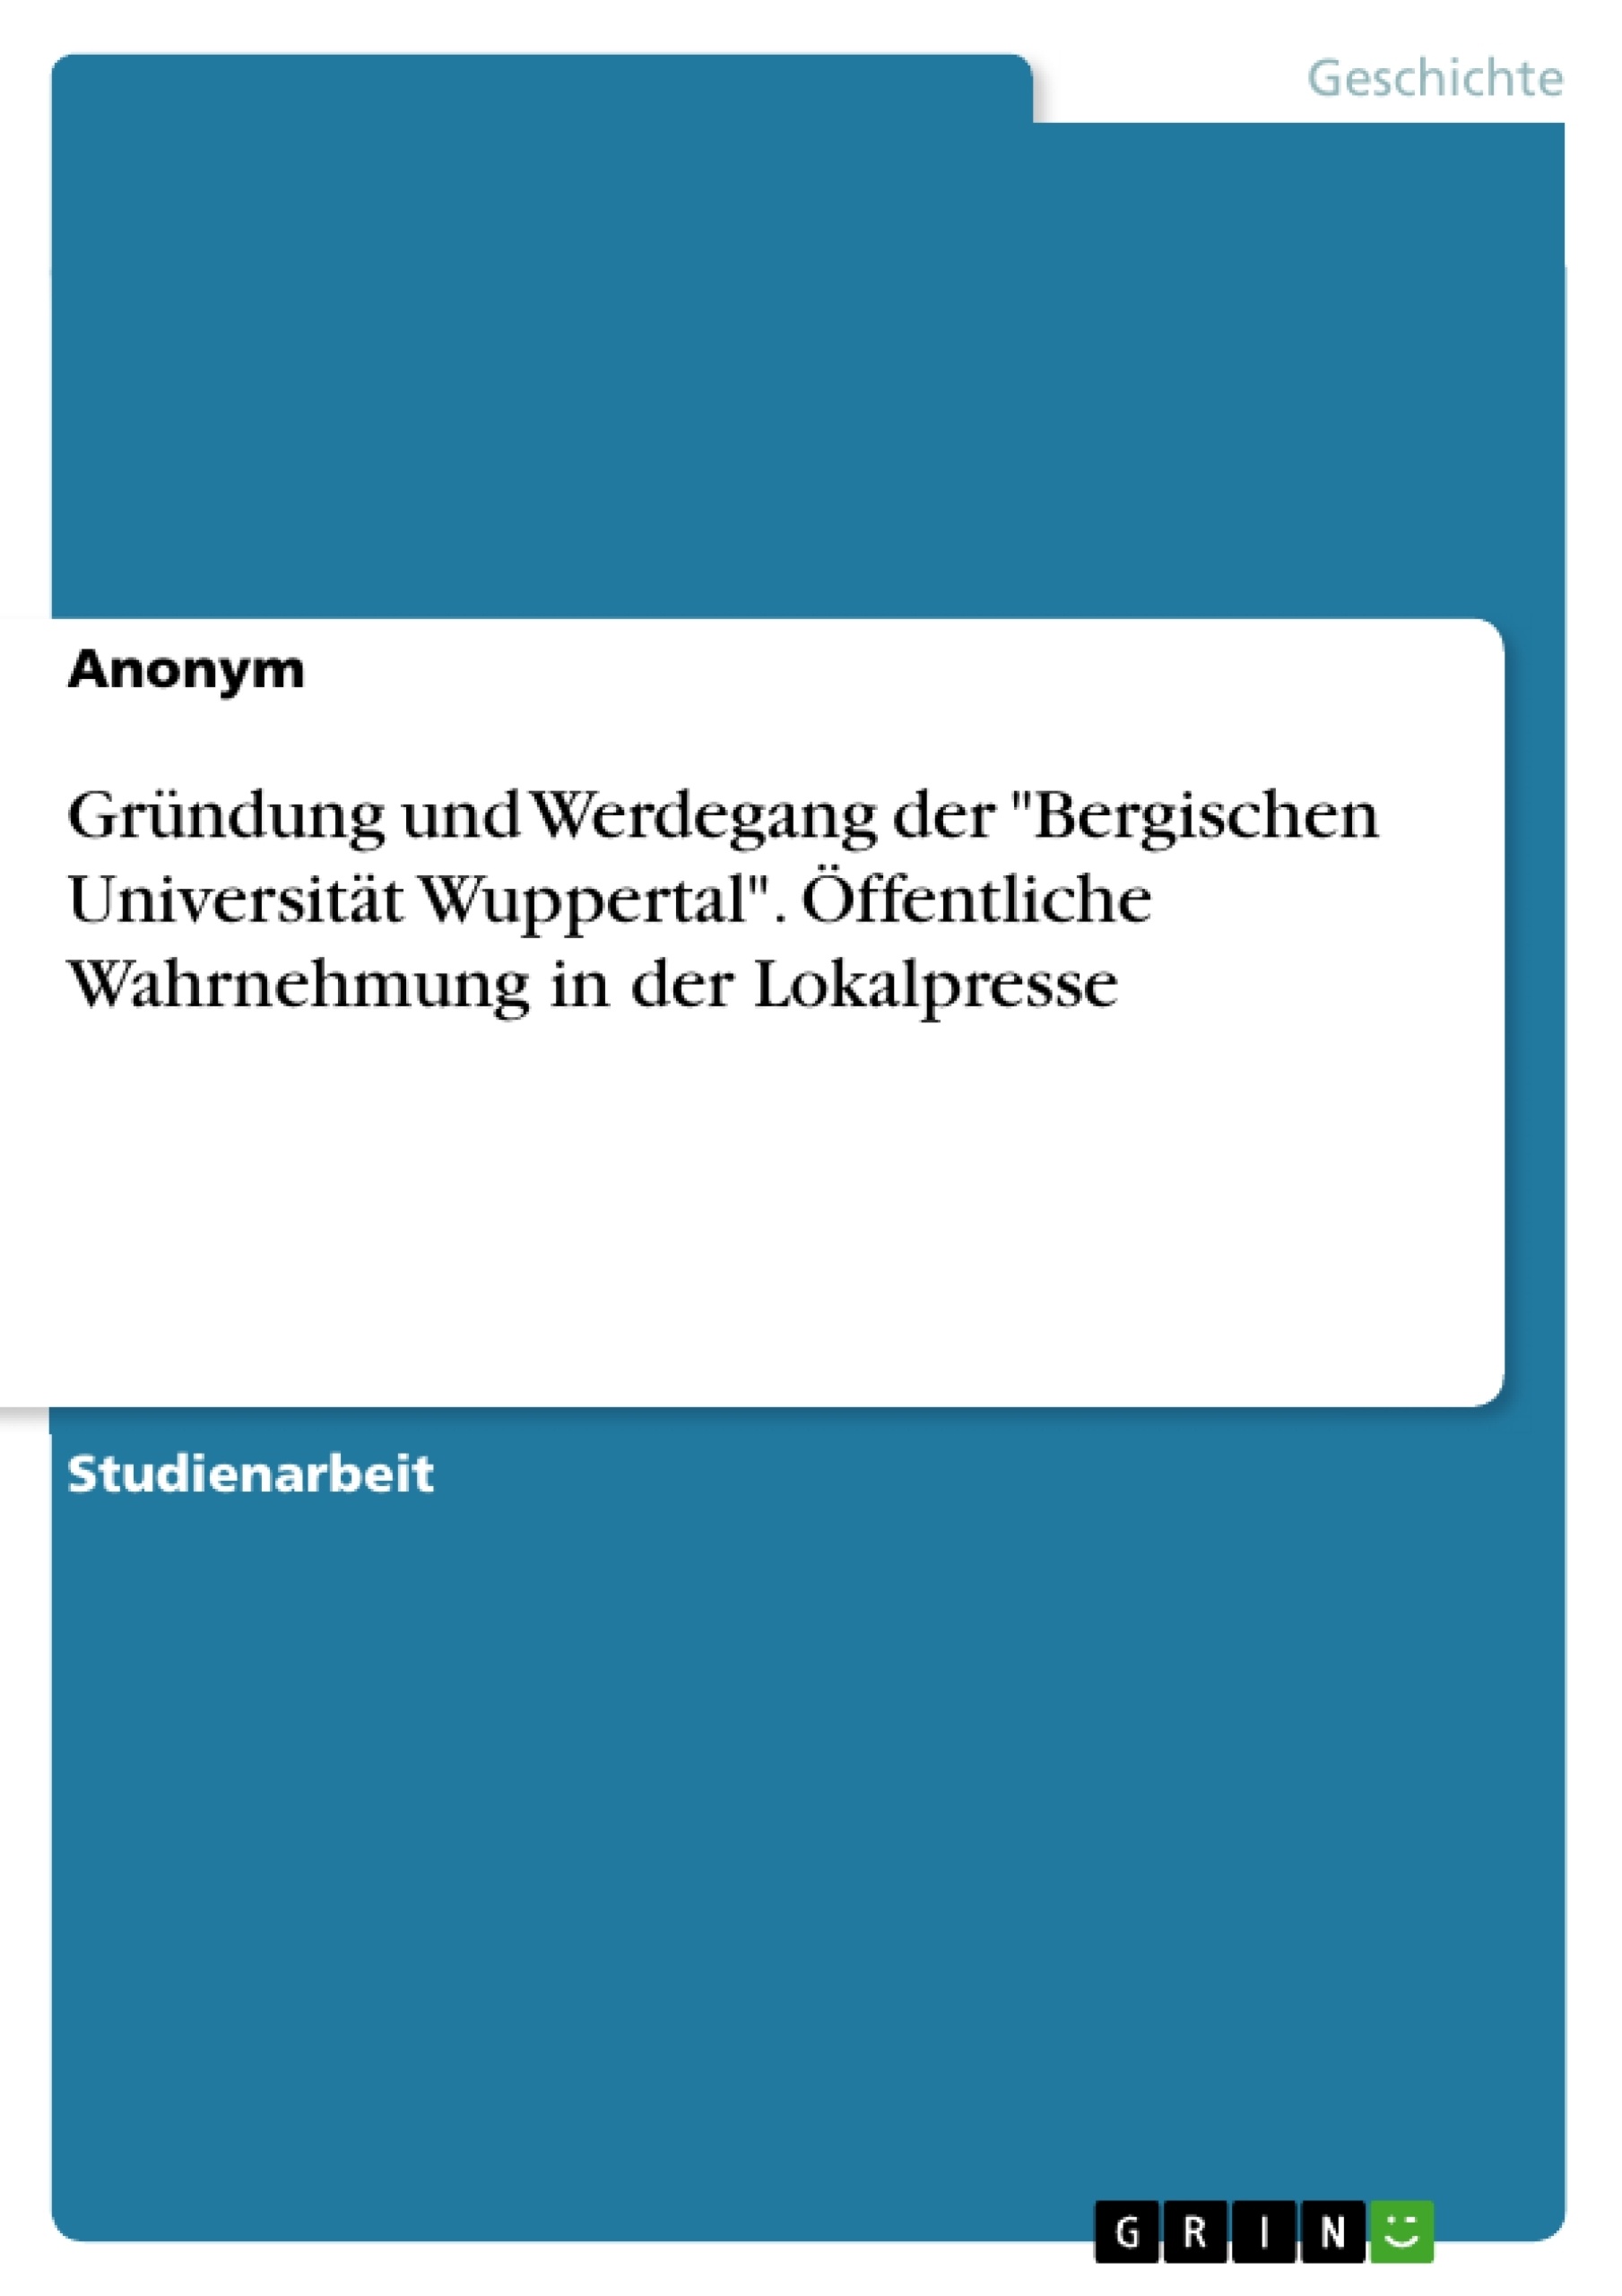 Title: Gründung und Werdegang der "Bergischen Universität Wuppertal". Öffentliche Wahrnehmung in der Lokalpresse